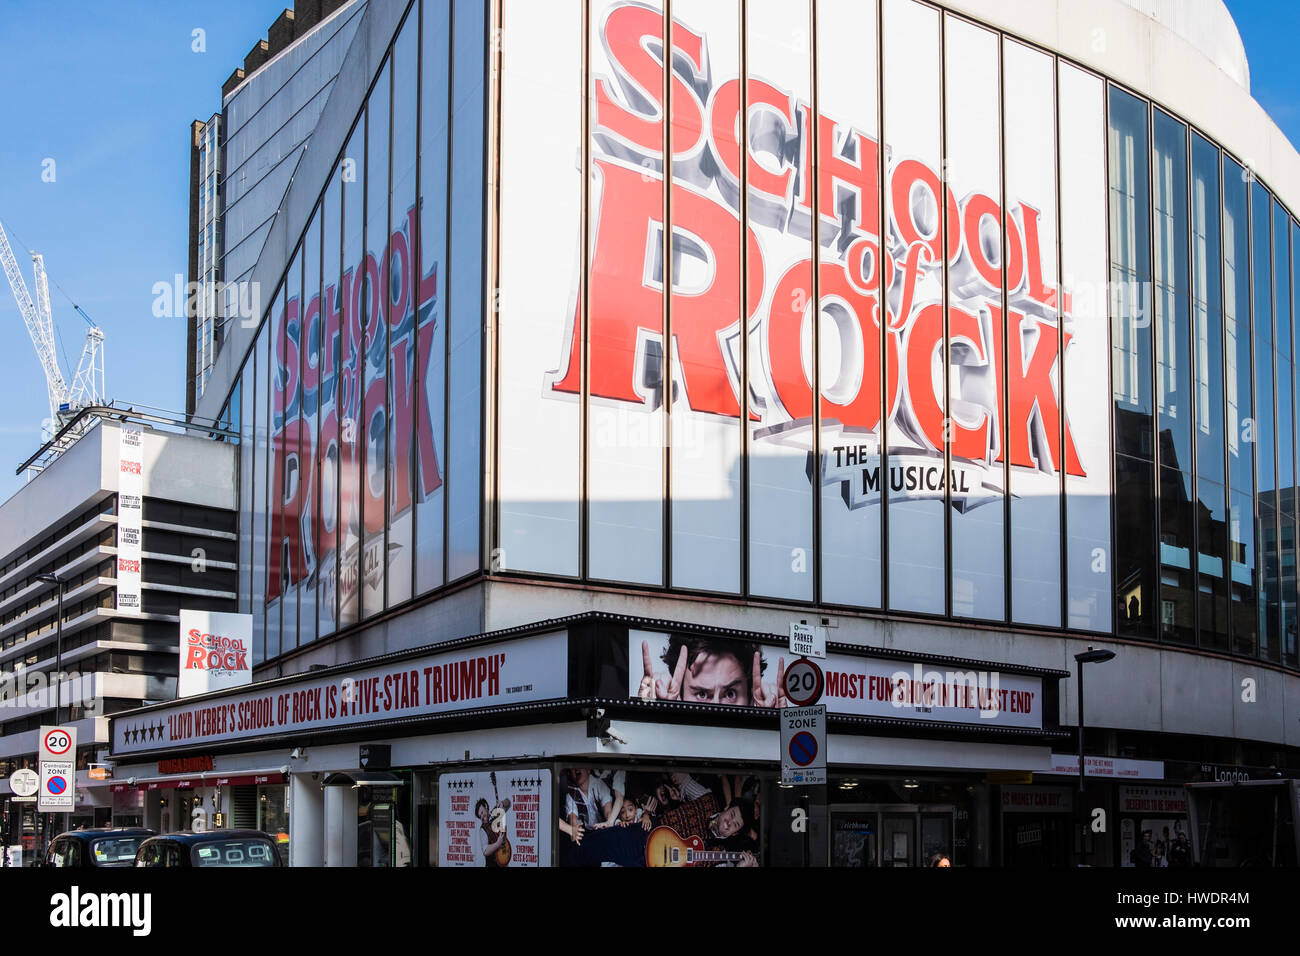 Escuela de Rock, El Musical, el Nuevo Teatro de Londres, Dury Lane, Londres, Inglaterra, Reino Unido. Foto de stock